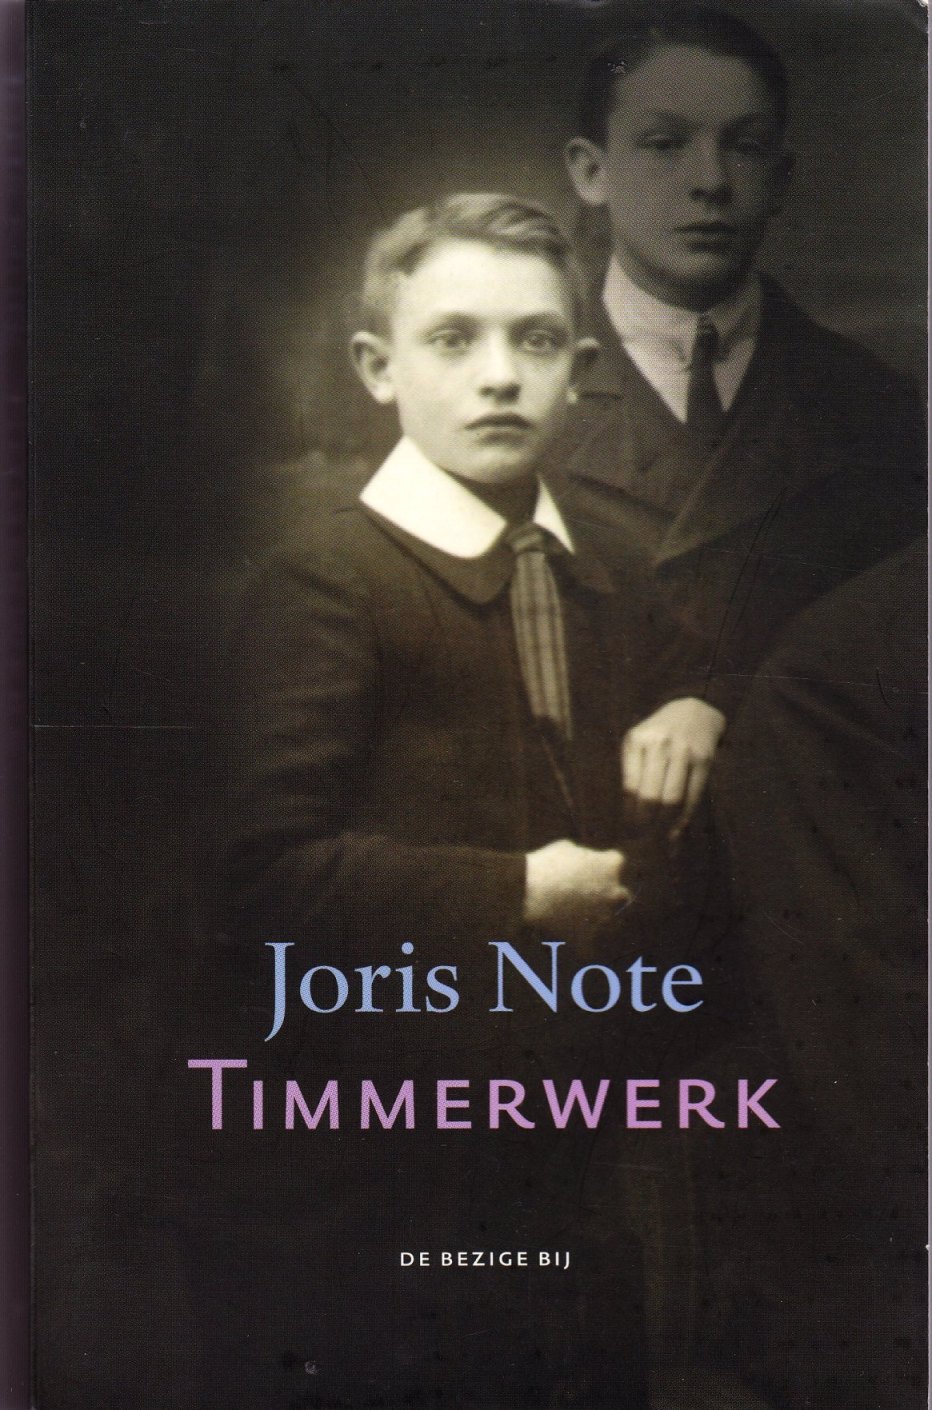 Résultat de recherche d'images pour "Timmerwerk van Joris Note"